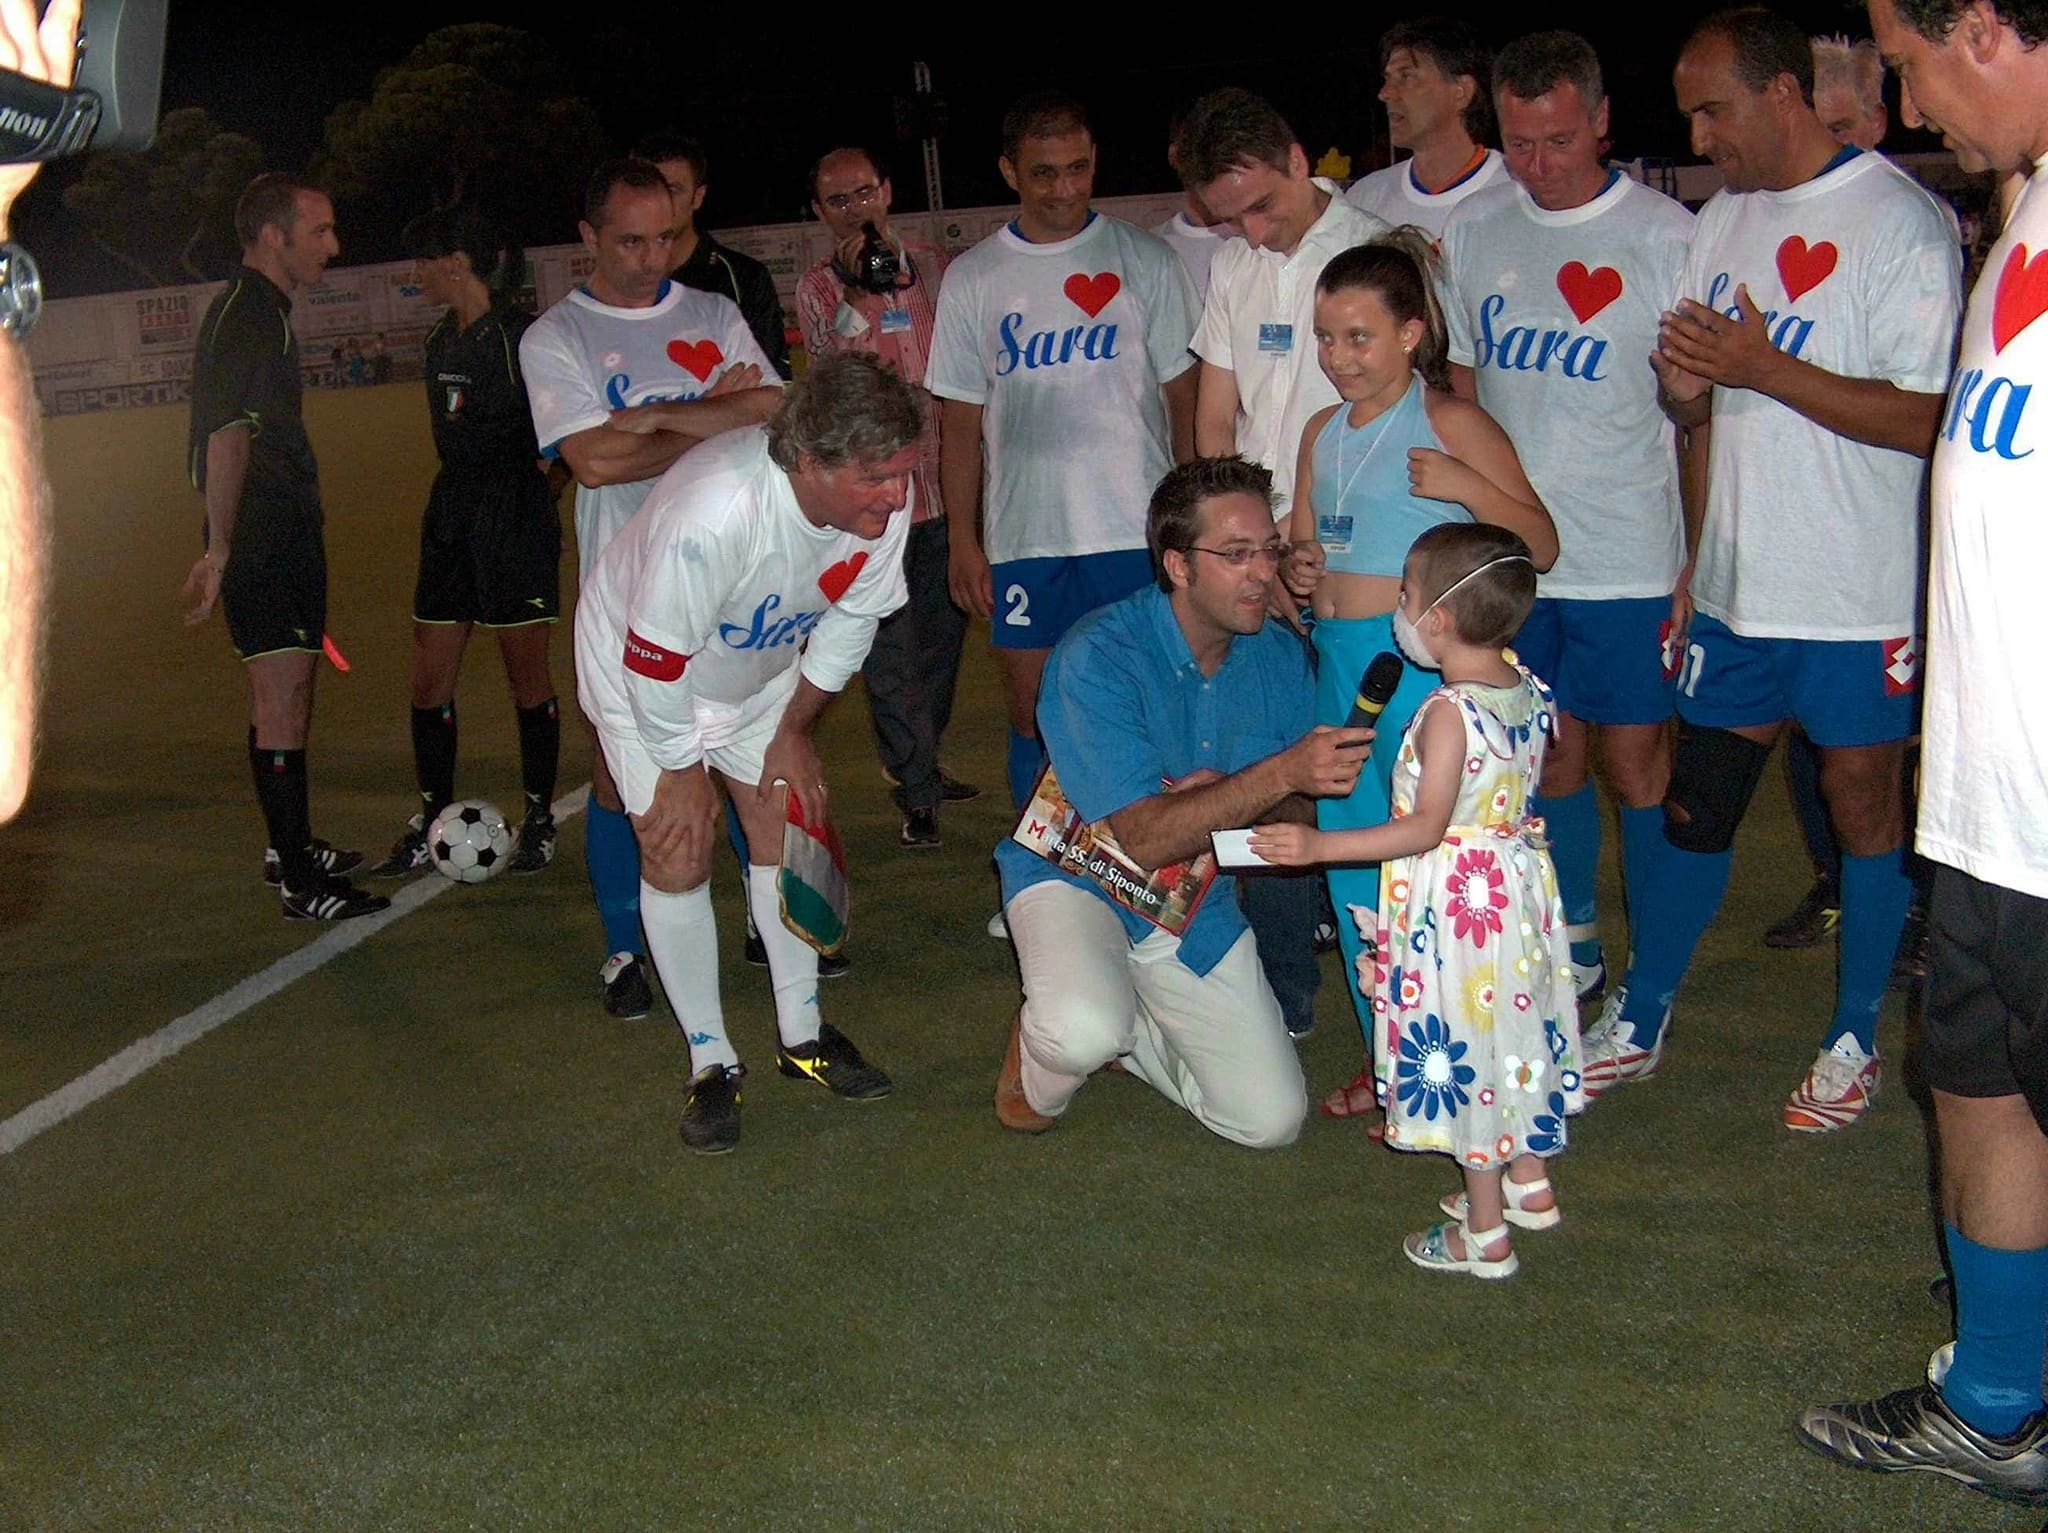 "Venti anni fa la partita del cuore per Sara, che unì Manfredonia in un abbraccio di solidarietà"